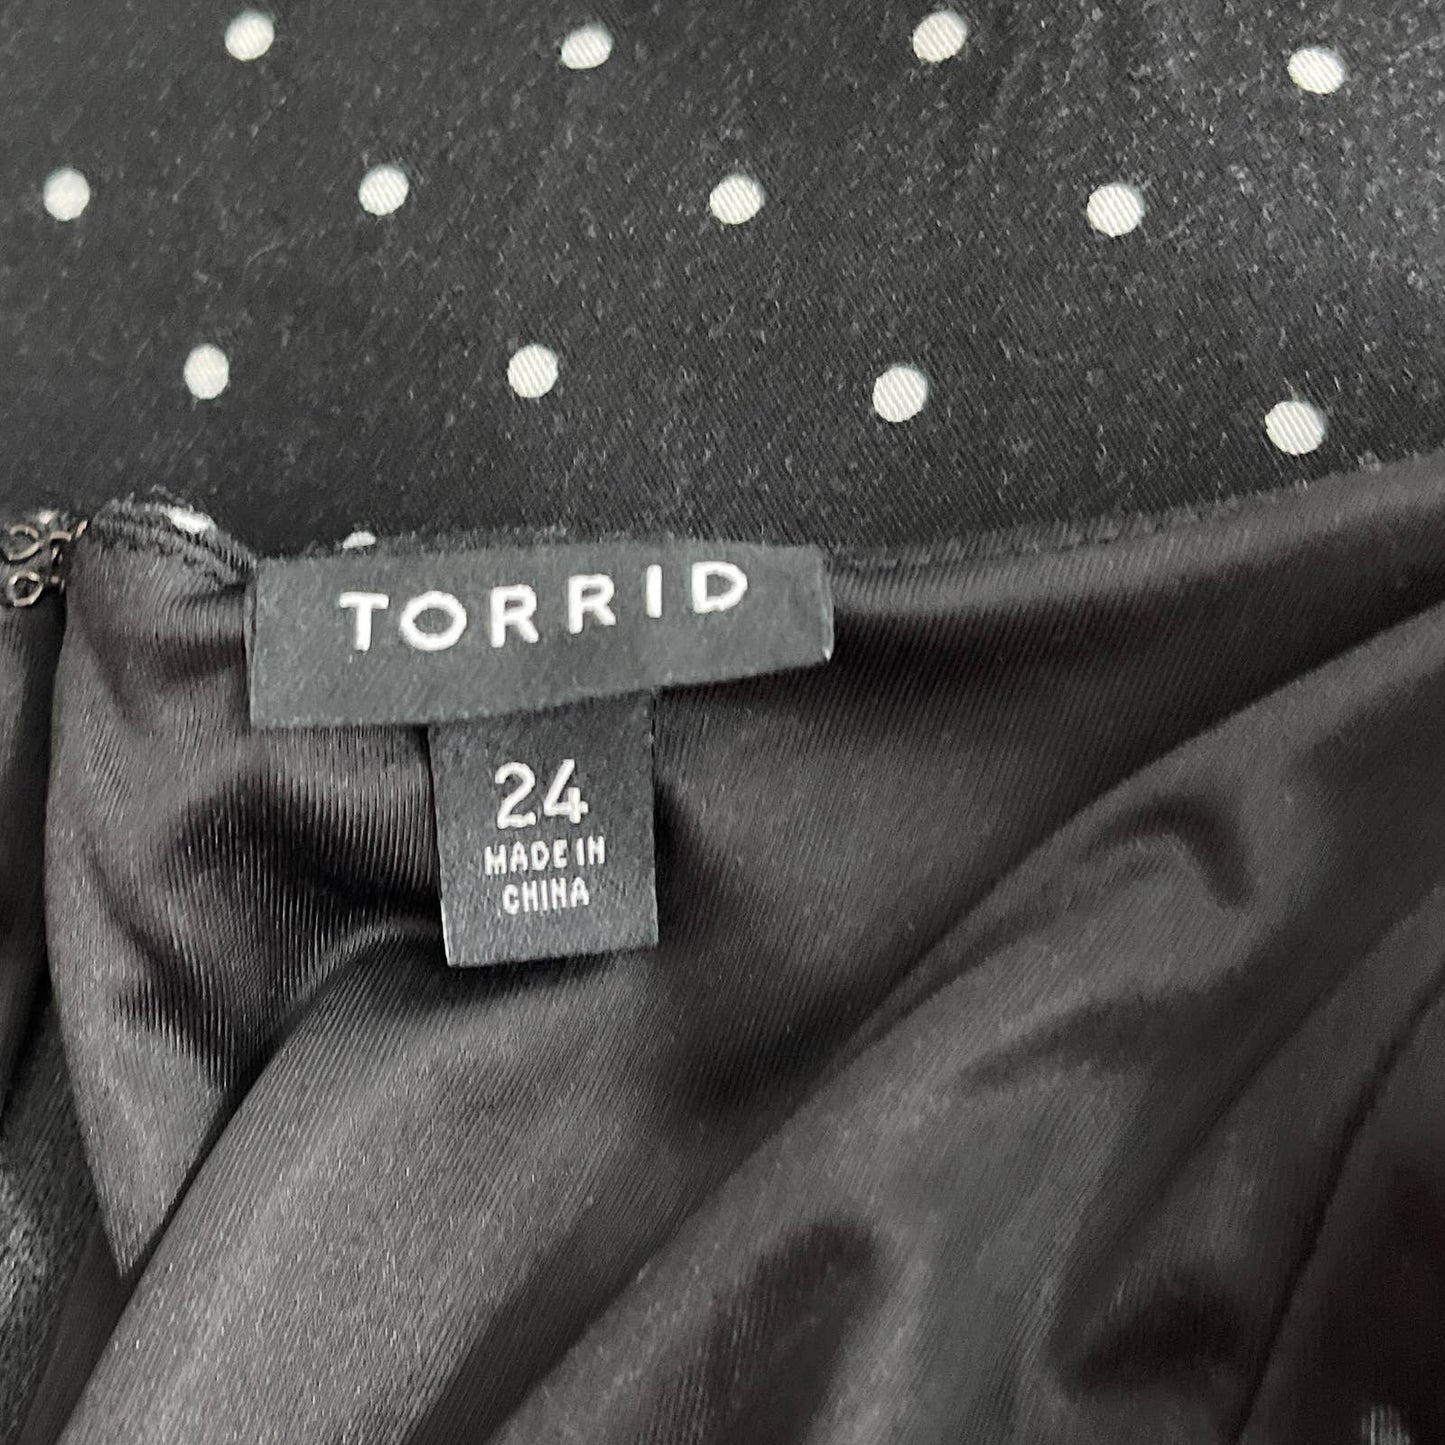 Torrid | Polka Dot Black Challis Sleeveless Dress | Sz 24